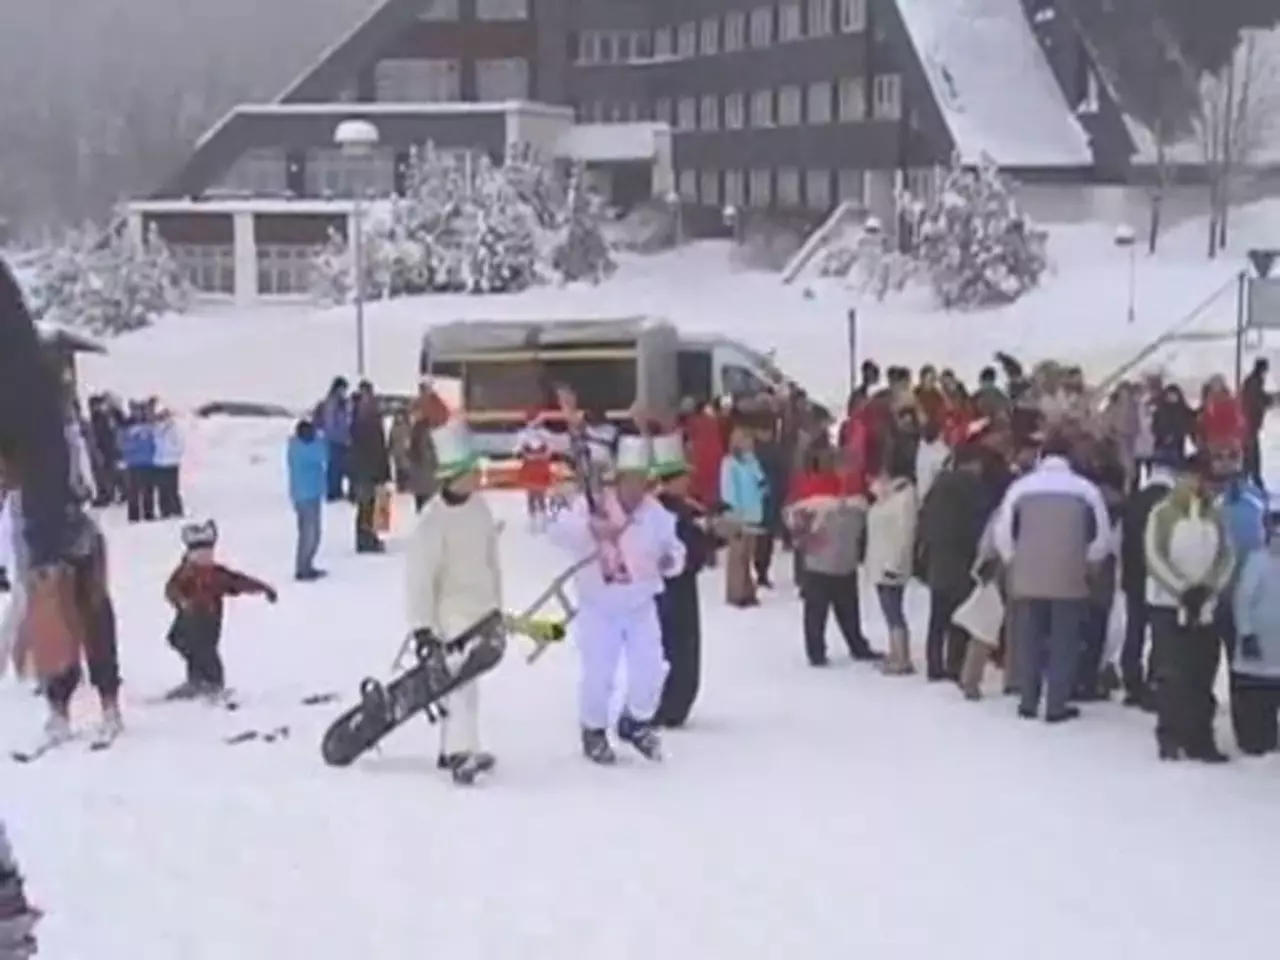 Foto: Skifasching in Holzhau Verkehrte Welt - wie es uns gefällt am 21.2.2009 (14)